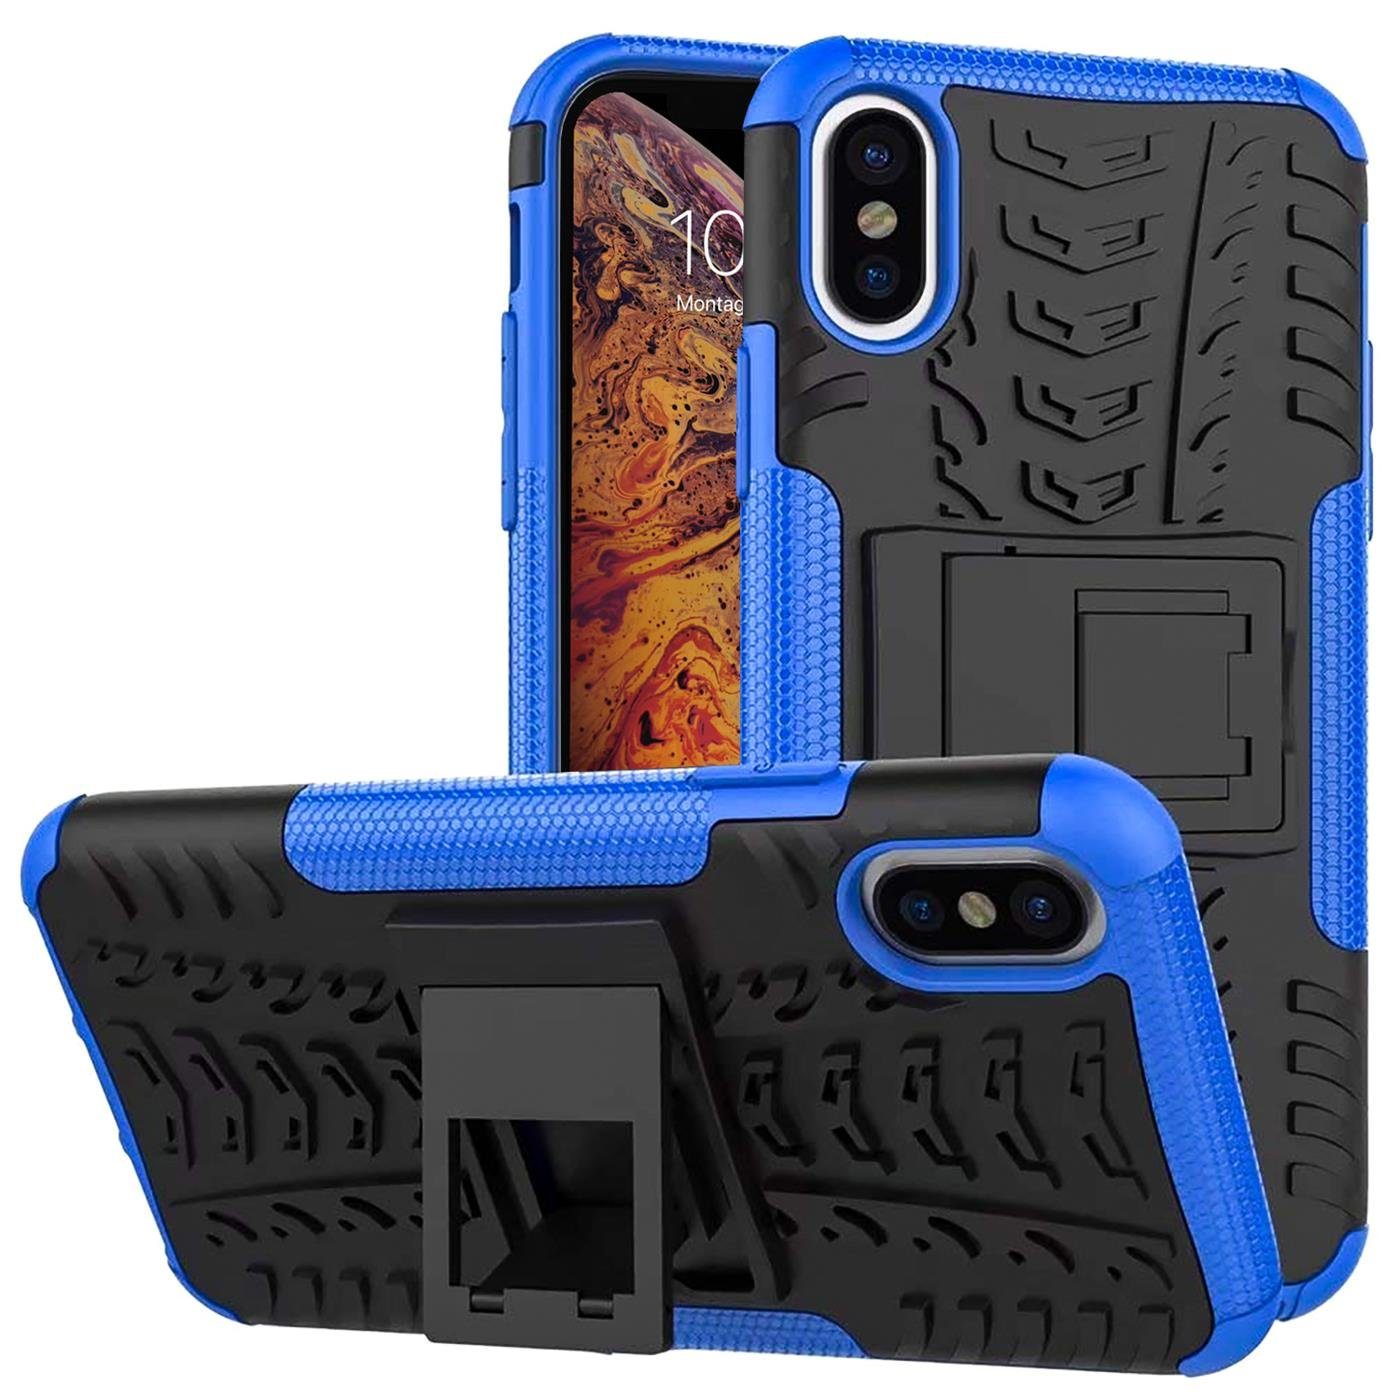 CoolGadget Handyhülle »Outdoor Case Hybrid Cover« für Apple iPhone X / XS  5,8 Zoll, Schutzhülle extrem robust Case Handy Case für iPhone X, iPhone XS  Hülle online kaufen | OTTO